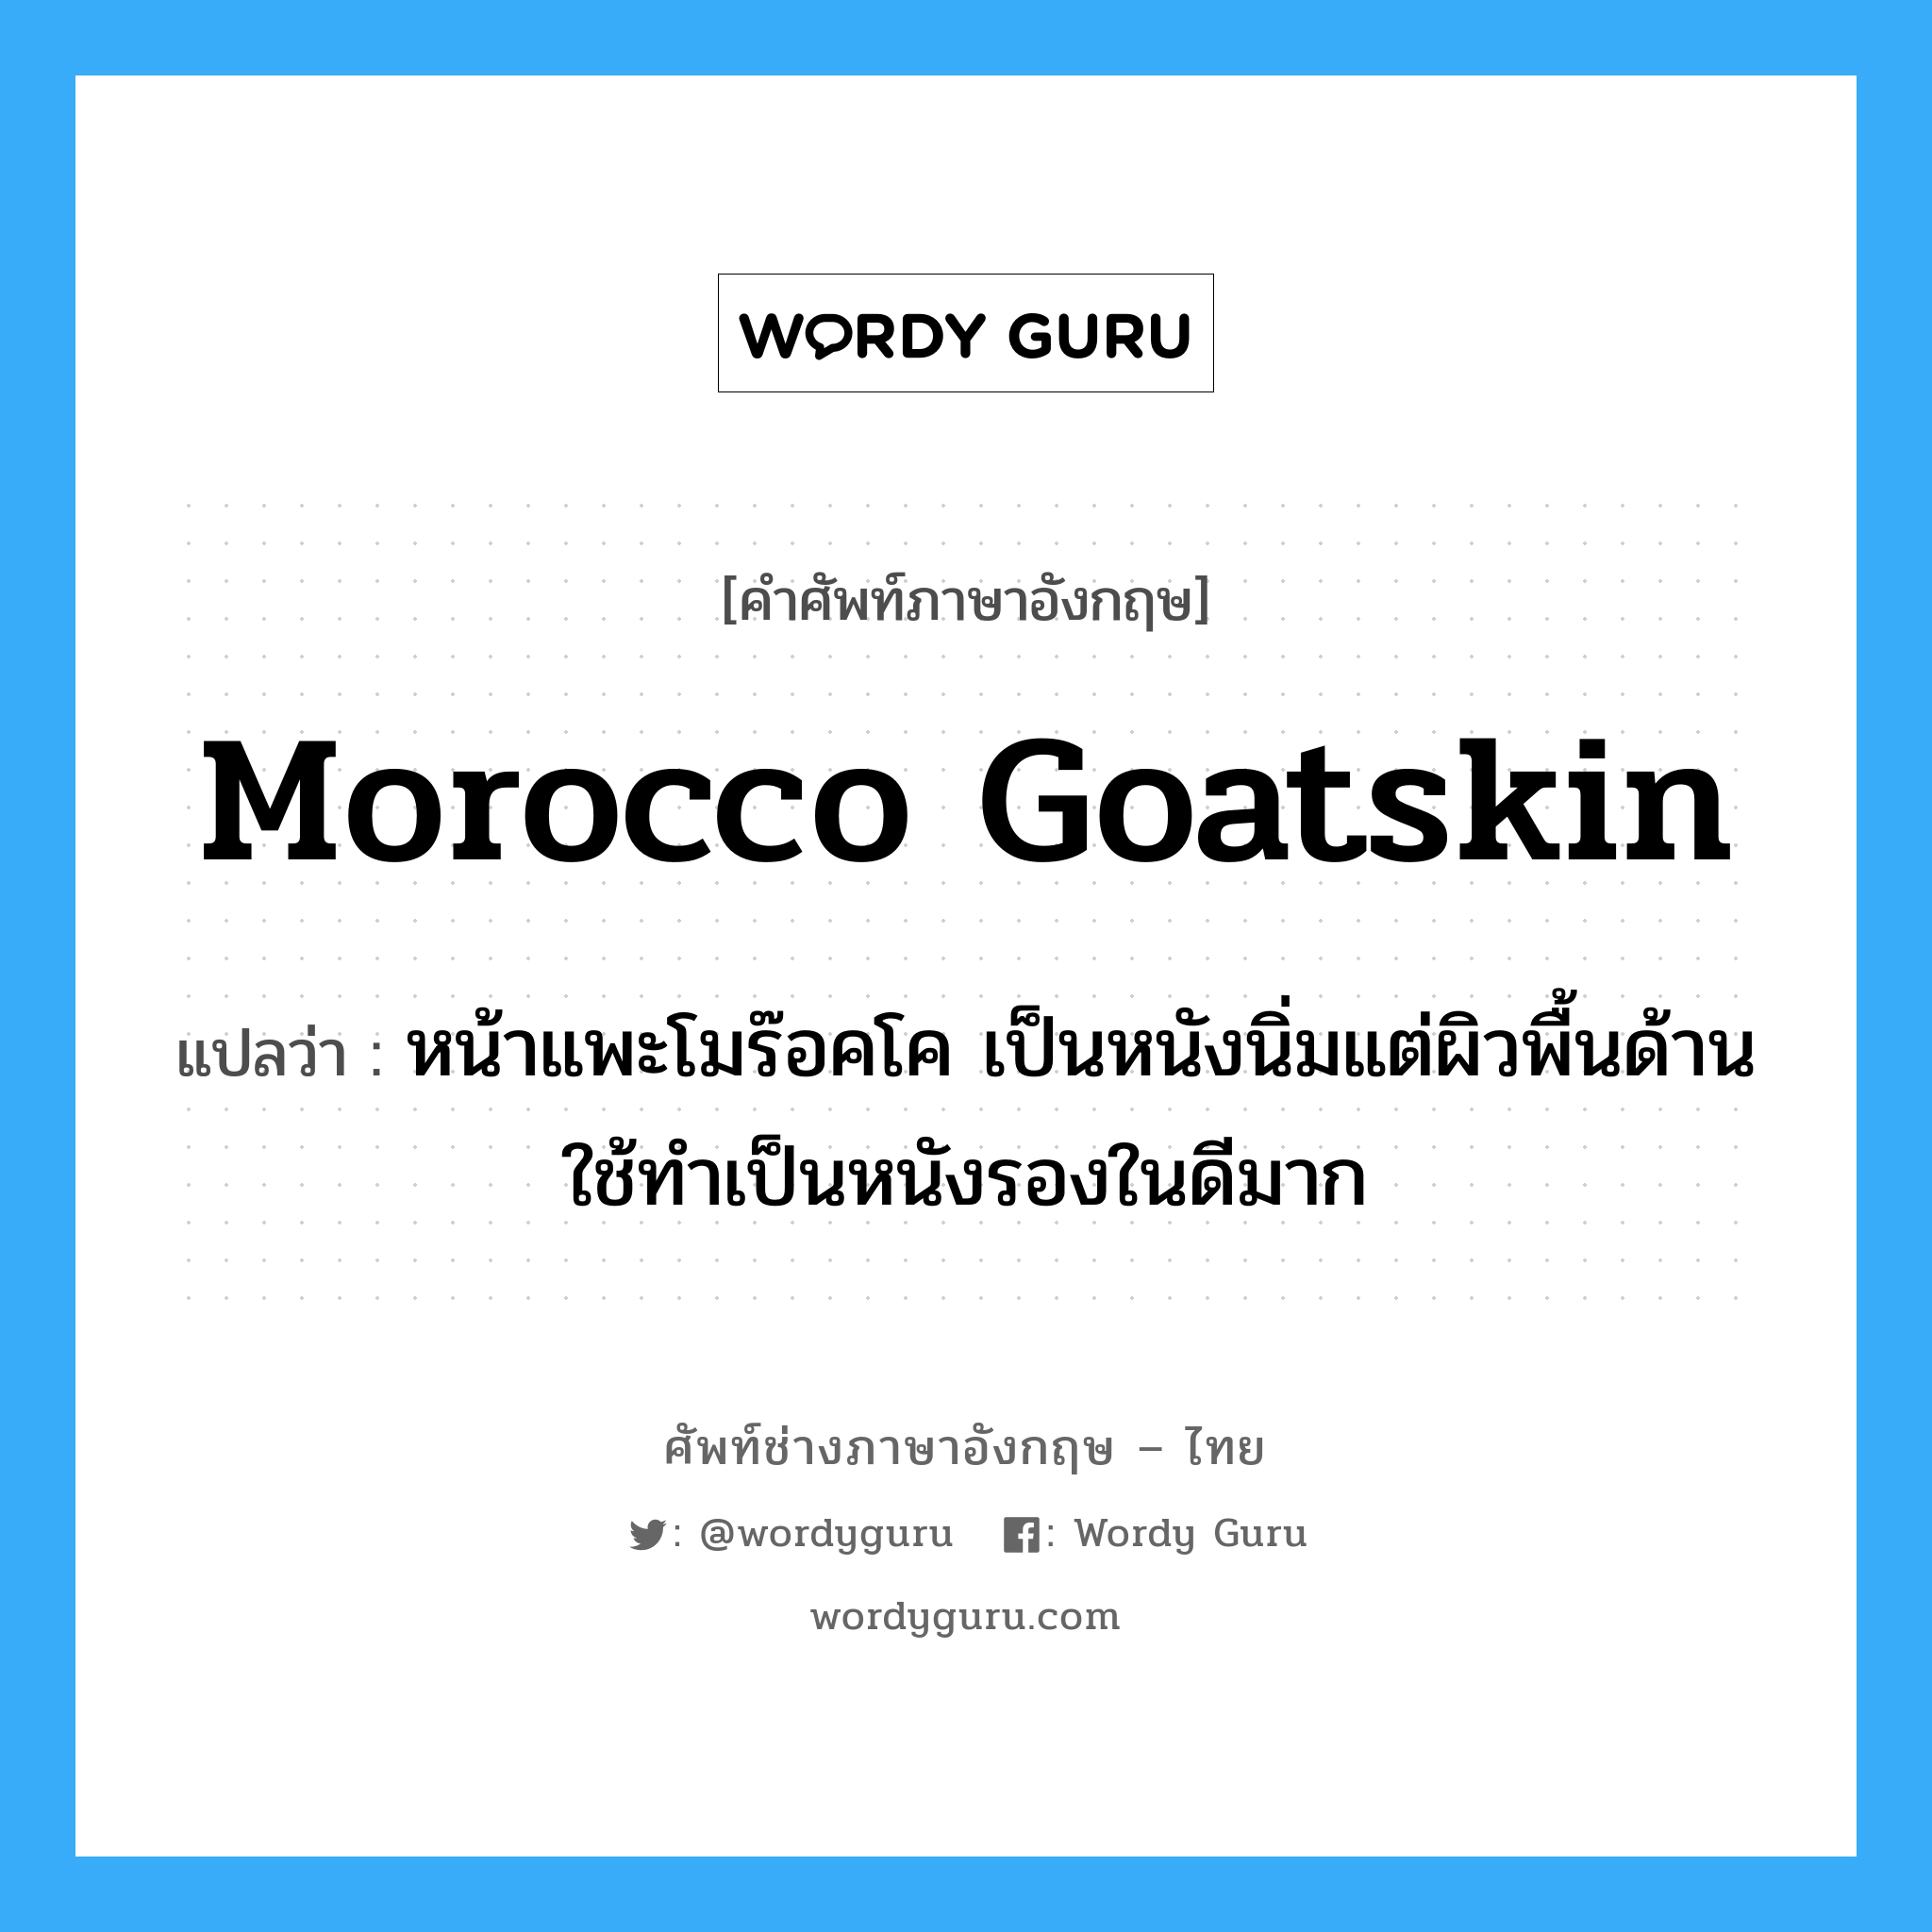 morocco goatskin แปลว่า?, คำศัพท์ช่างภาษาอังกฤษ - ไทย morocco goatskin คำศัพท์ภาษาอังกฤษ morocco goatskin แปลว่า หน้าแพะโมร๊อคโค เป็นหนังนิ่มแต่ผิวพื้นด้าน ใช้ทำเป็นหนังรองในดีมาก